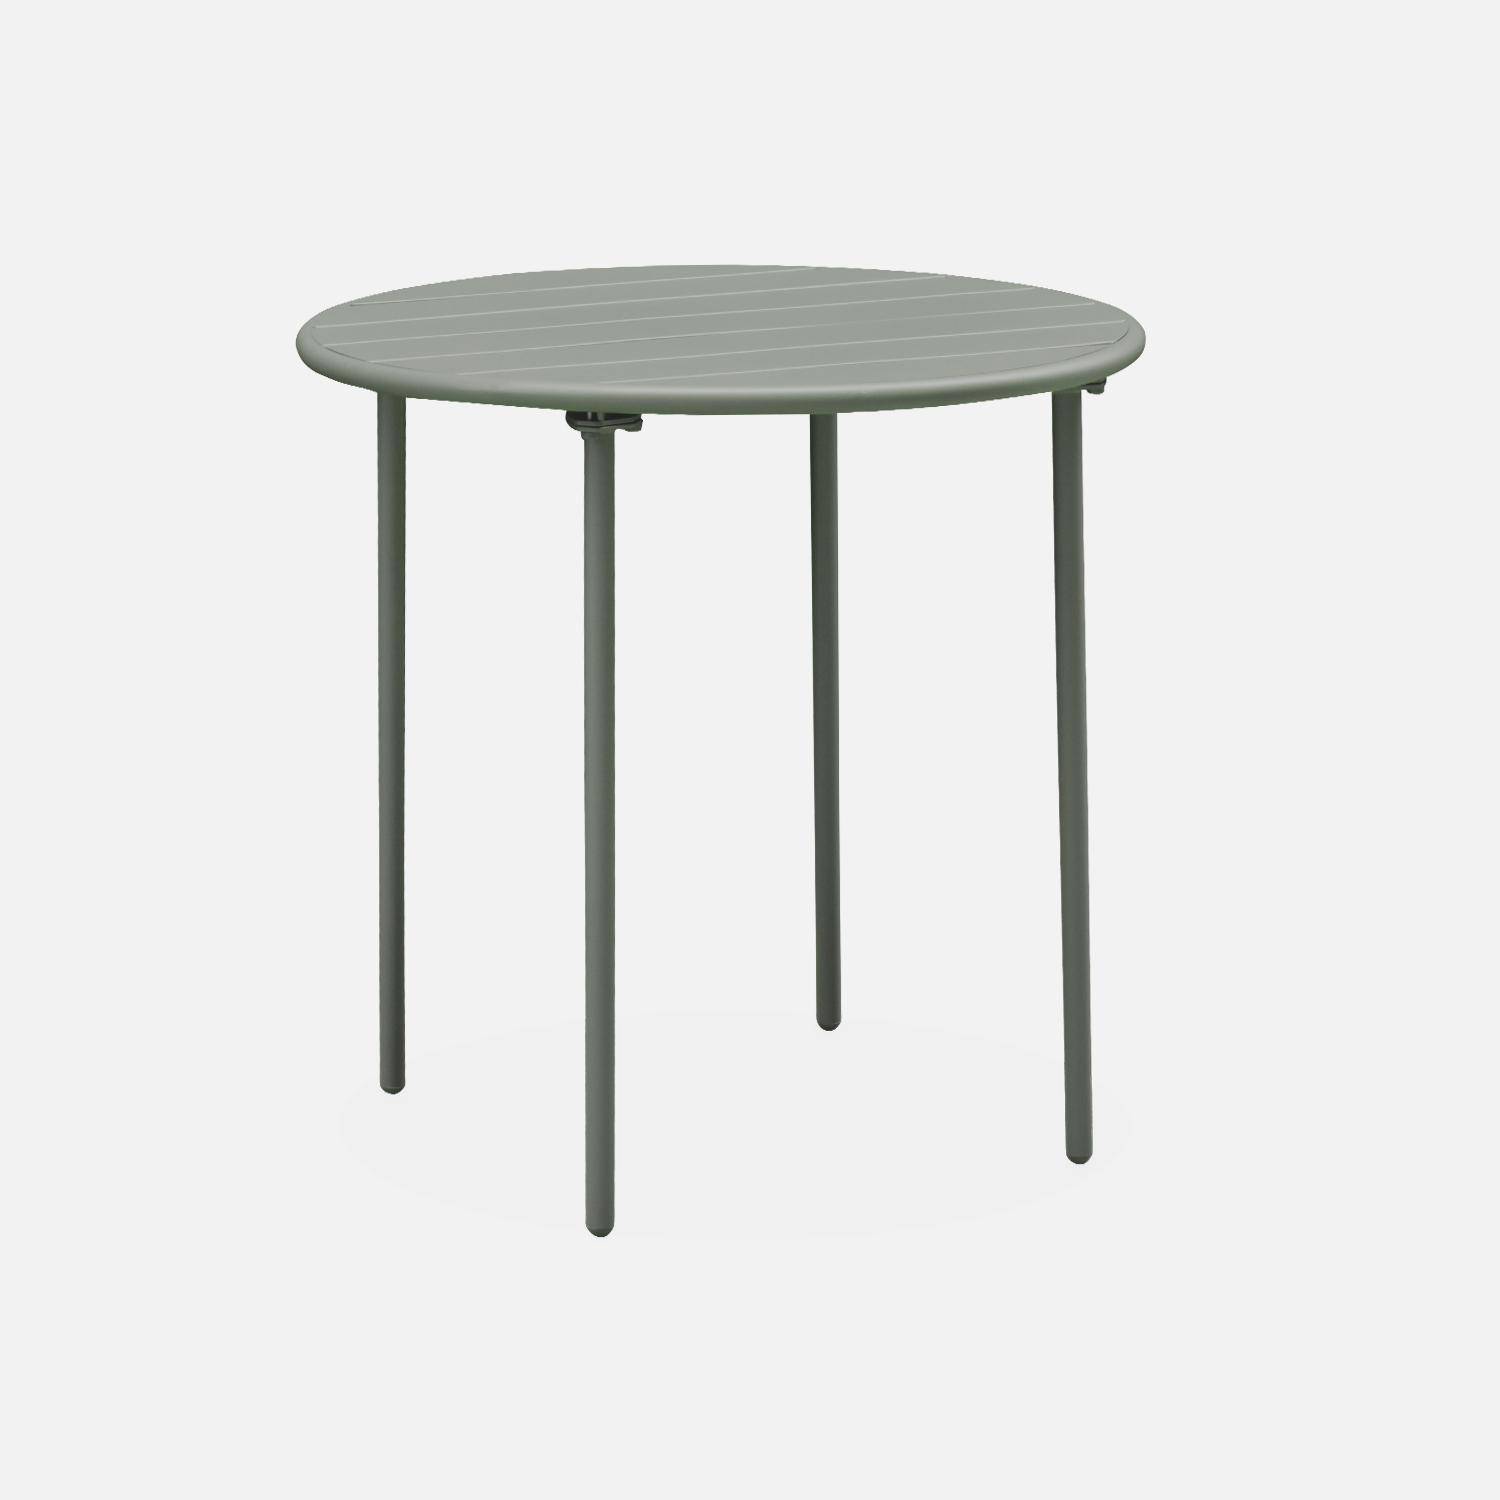 2-seater round steel garden table, Ø75cm - Amelia - Khaki Green Photo3